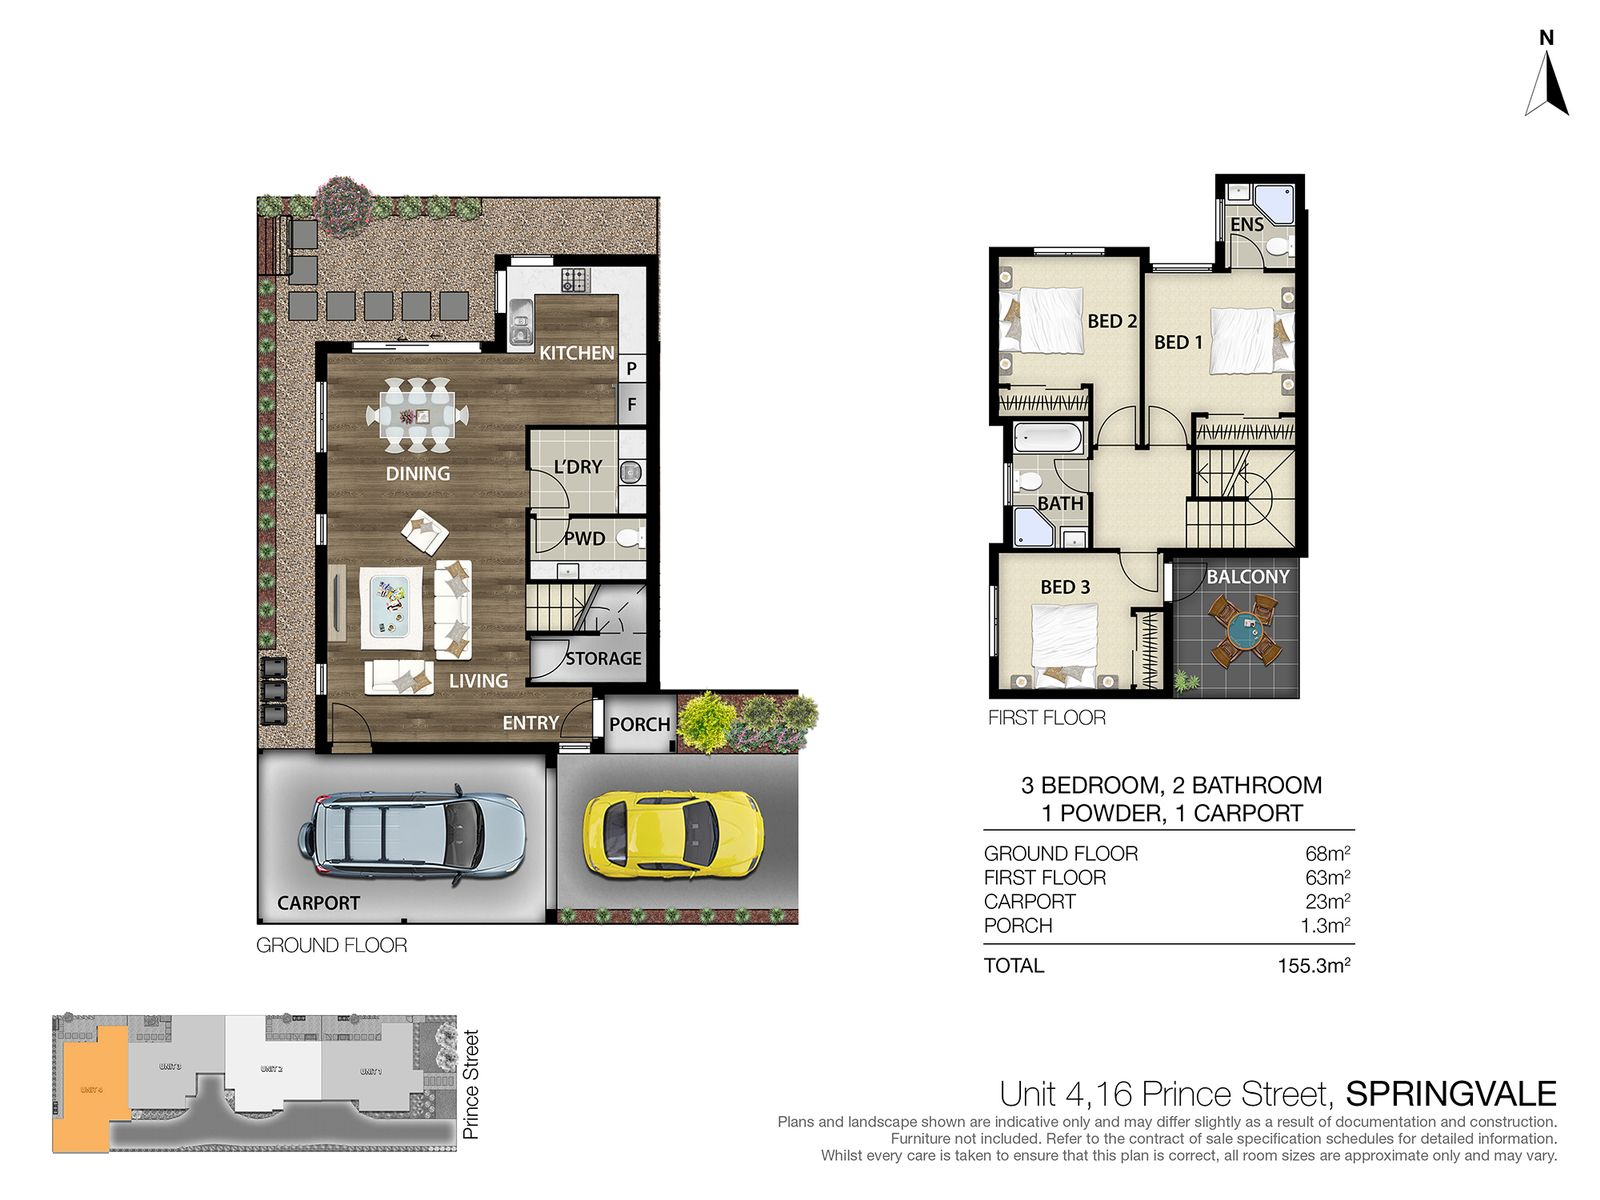 Unit 4, 16 Prince Street Springvale Floorplan (LR)